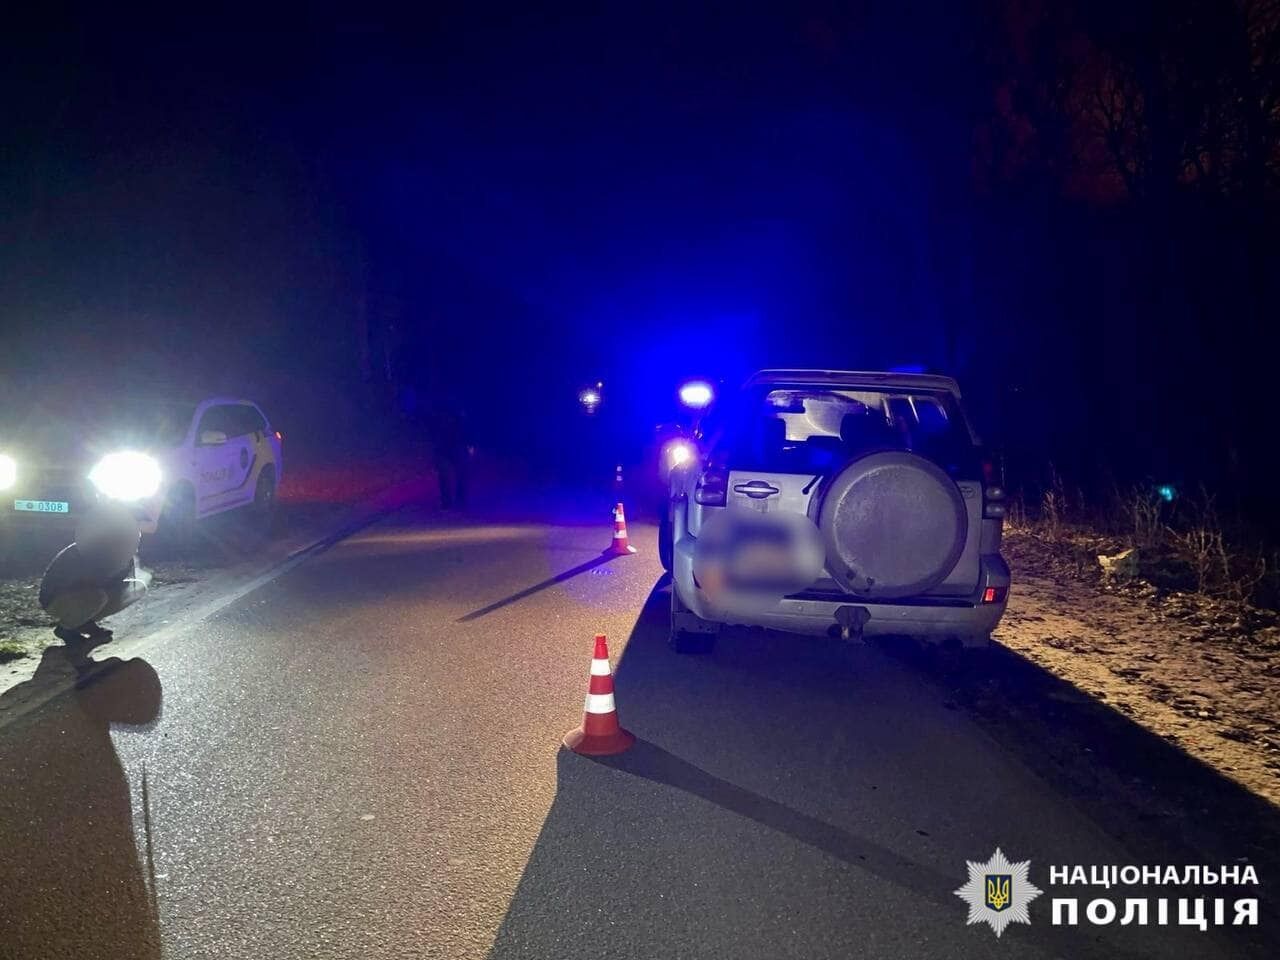 Под Киевом пьяная водитель Toyota сбила женщину. Фото и подробности